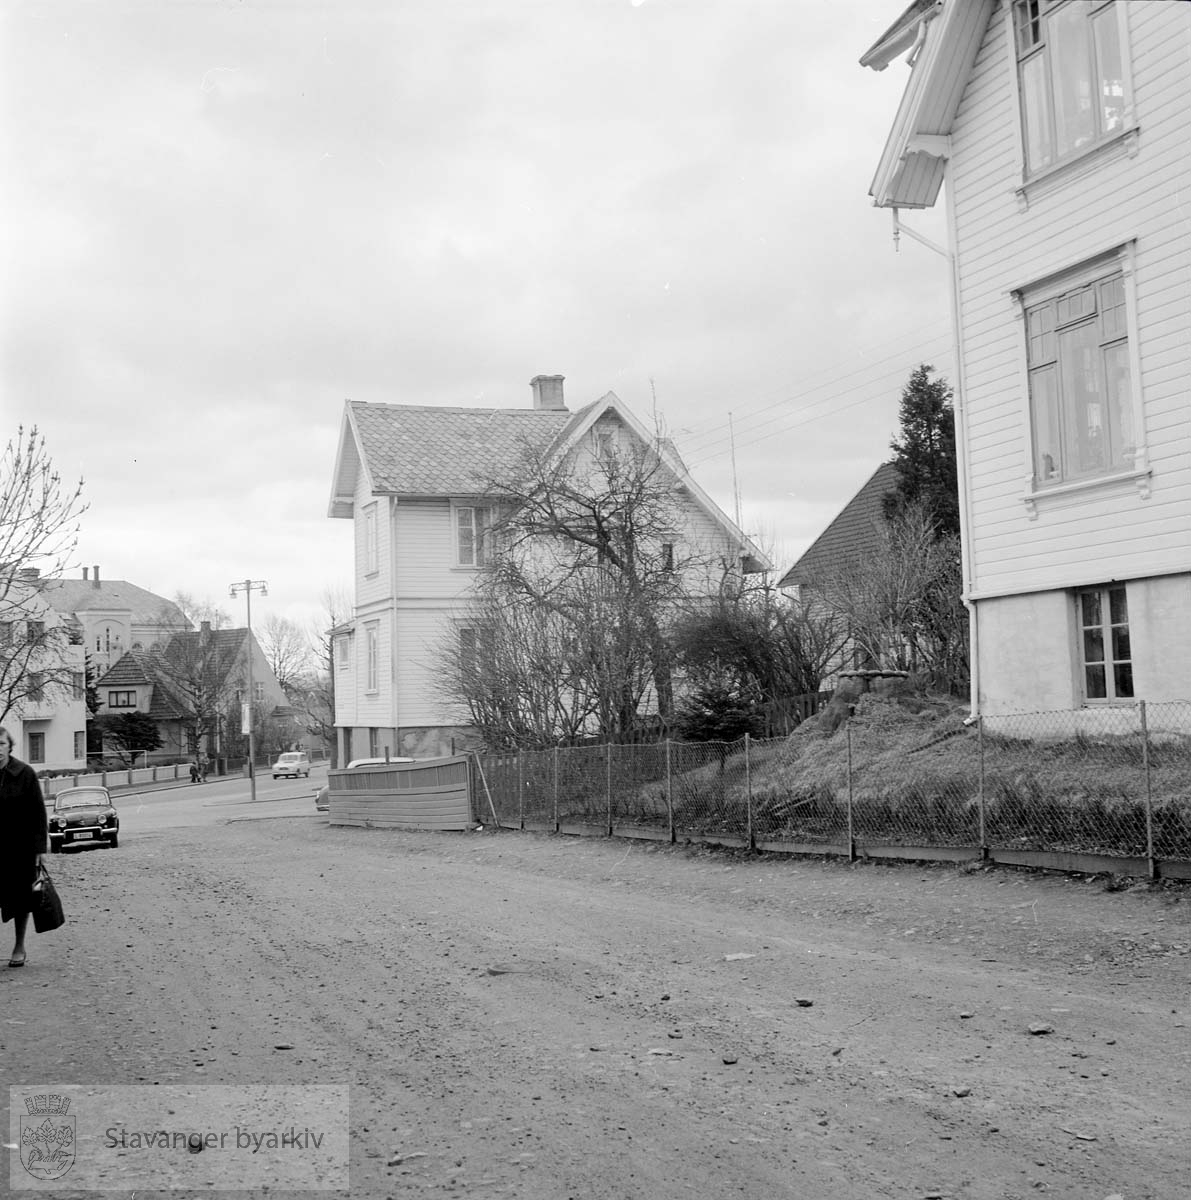 Foran til høyre er Kong Carls gate 34, i midten nr 30. Våland skole i bakgrunnen. Rektor Steens gate 4 og 6 foran skolen.